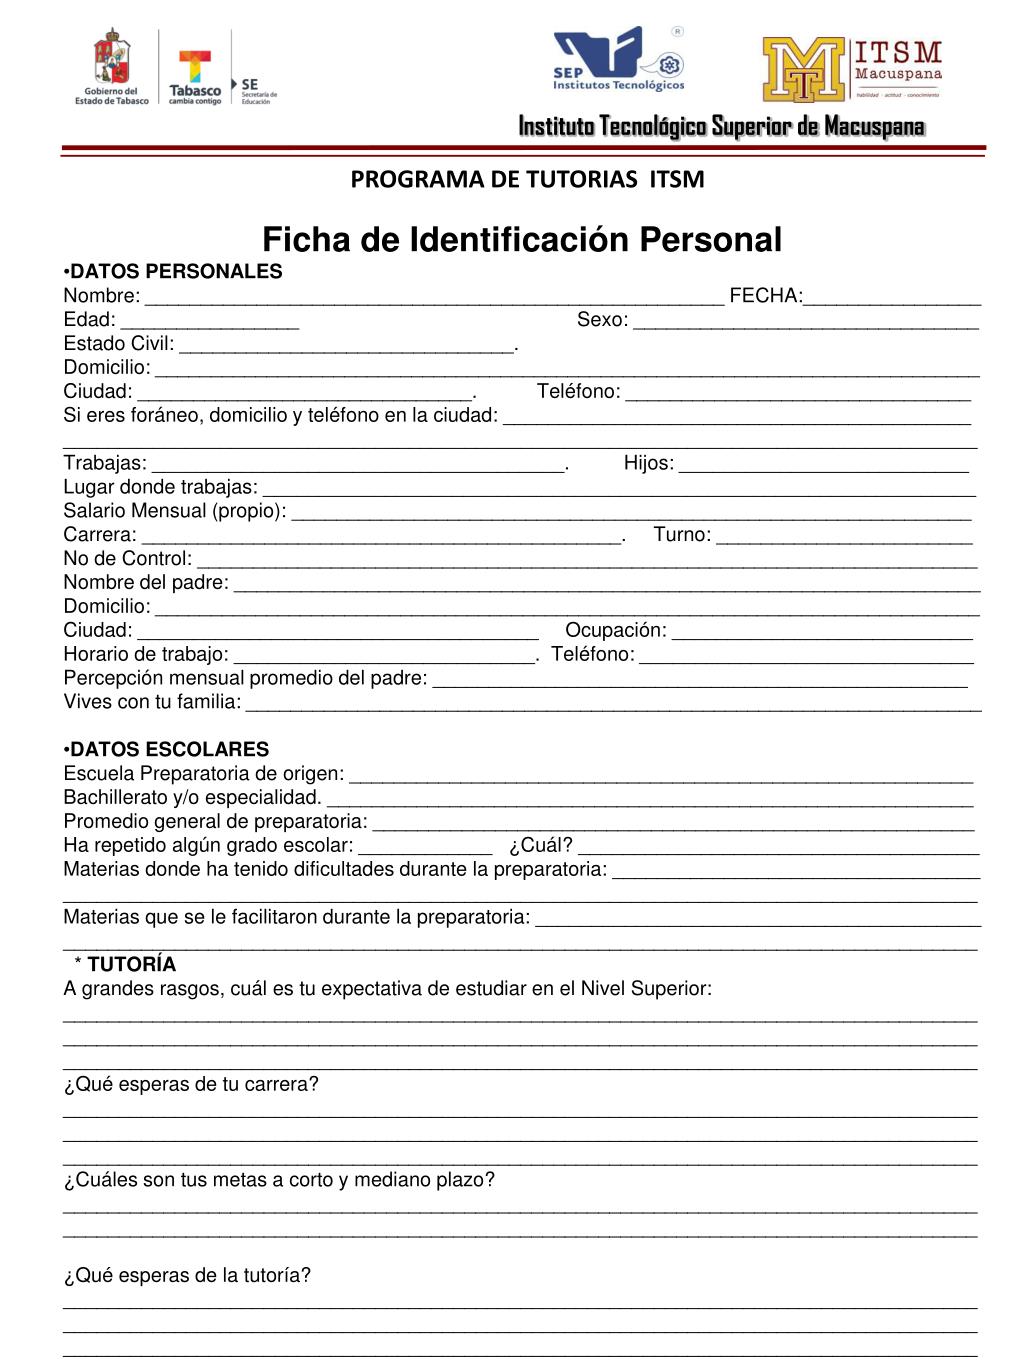 PPT - Ficha de Identificación Personal DATOS PERSONALES PowerPoint  Presentation - ID:2932210